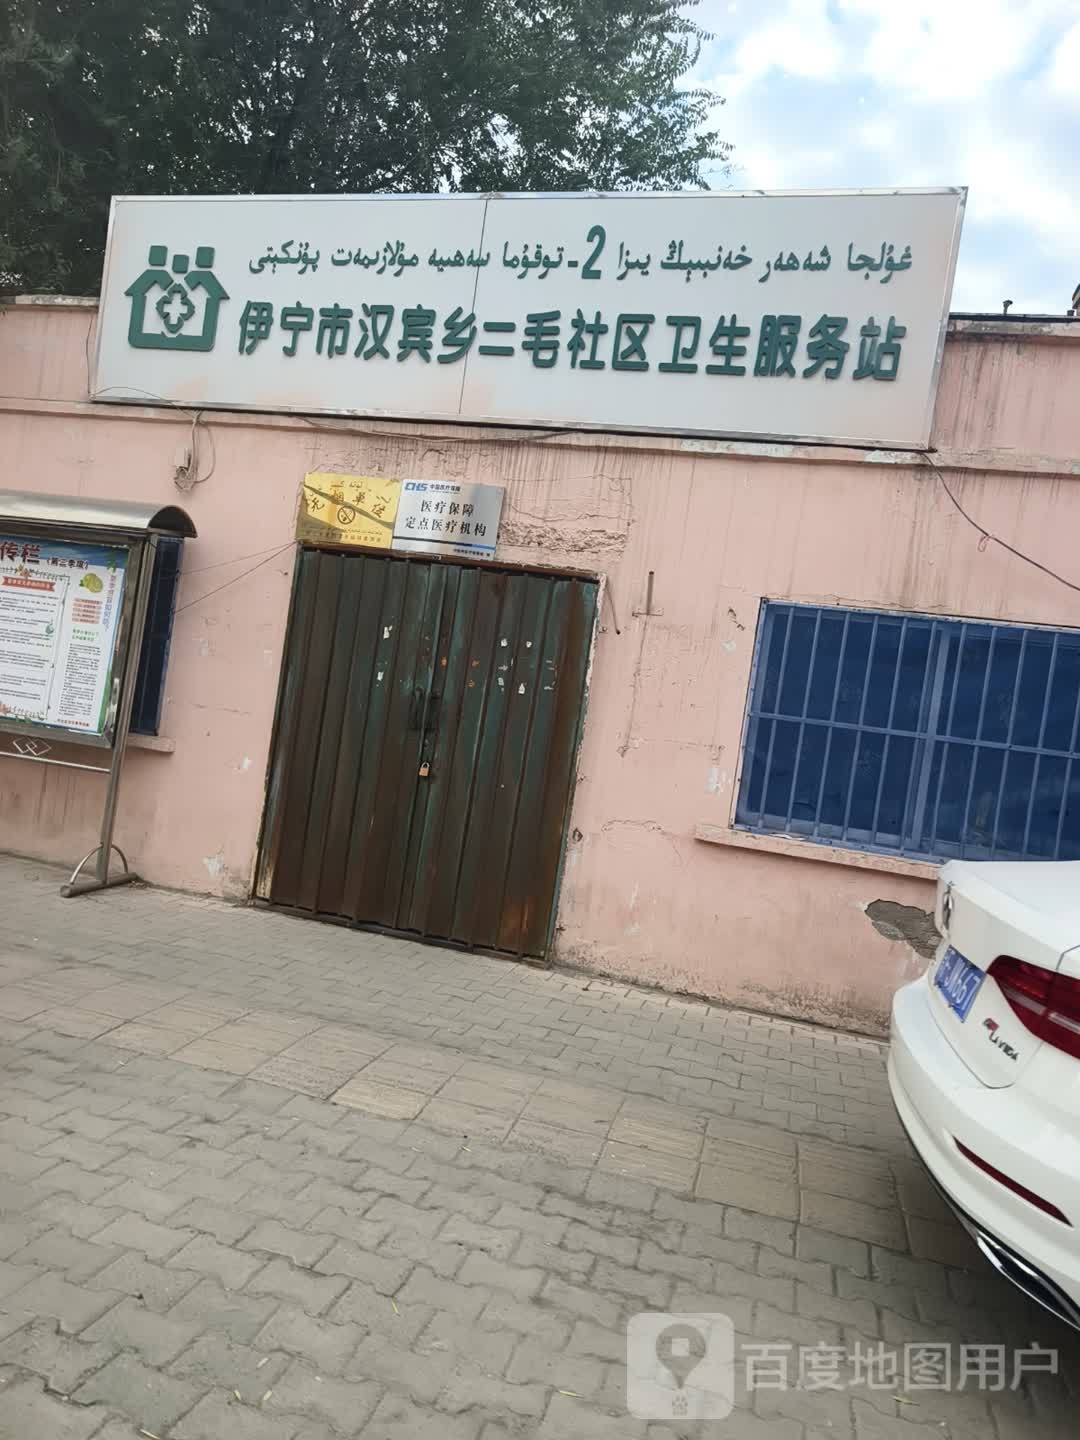 新疆维吾尔自治区伊犁哈萨克自治州伊宁市二毛社区卫生服务站(天津北路南)